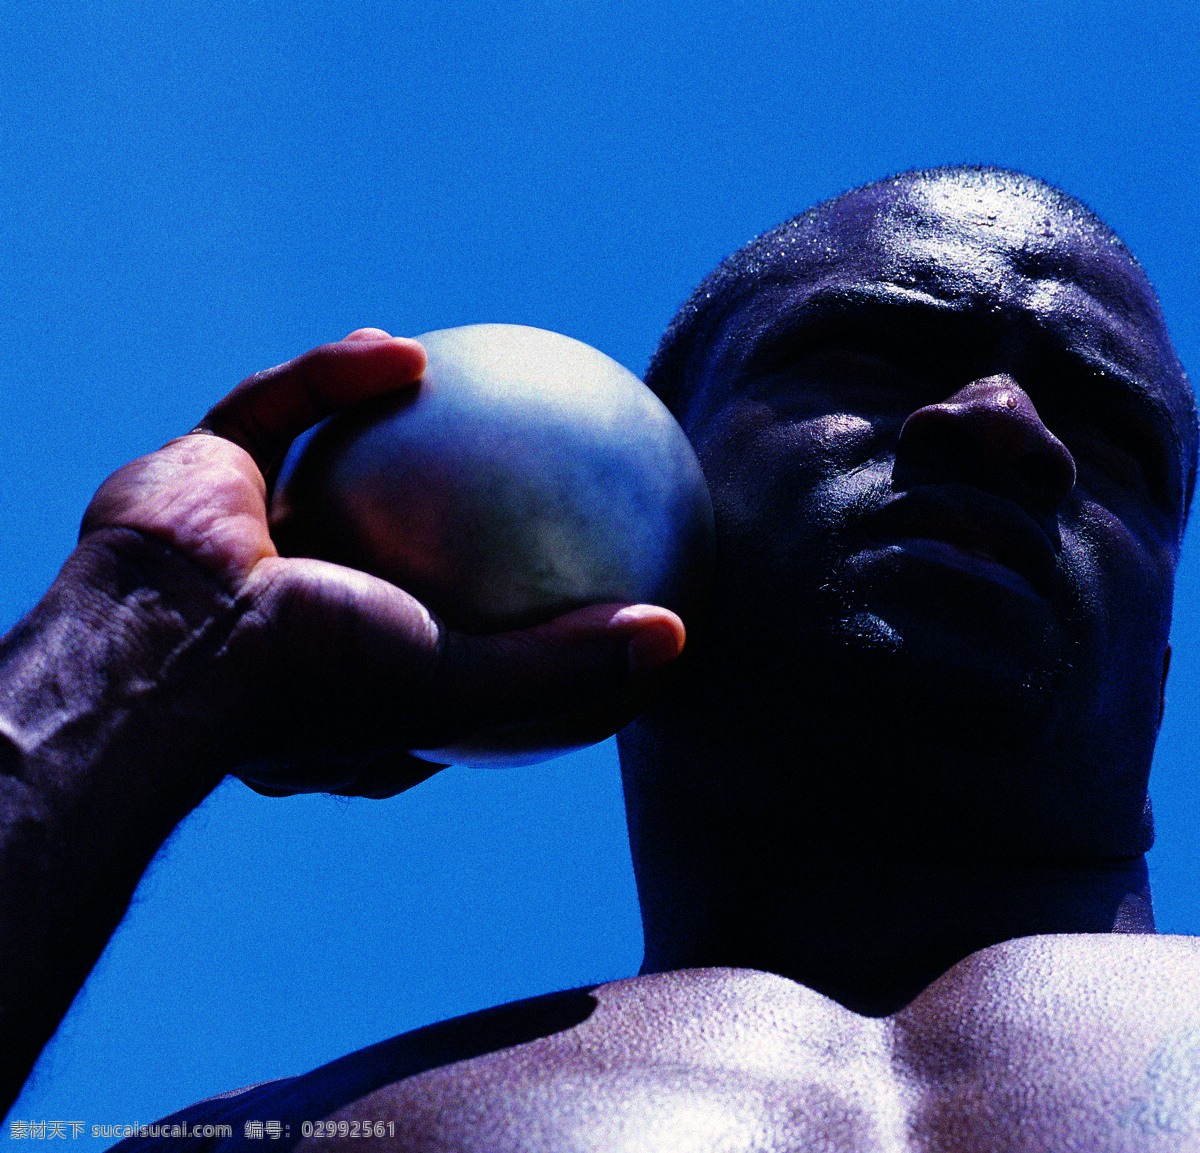 投铅球 投球 铅球 运动员 比赛 运动 运动会 大赛 奥运北京 掷球 文化艺术 体育运动 体育人生 摄影图库